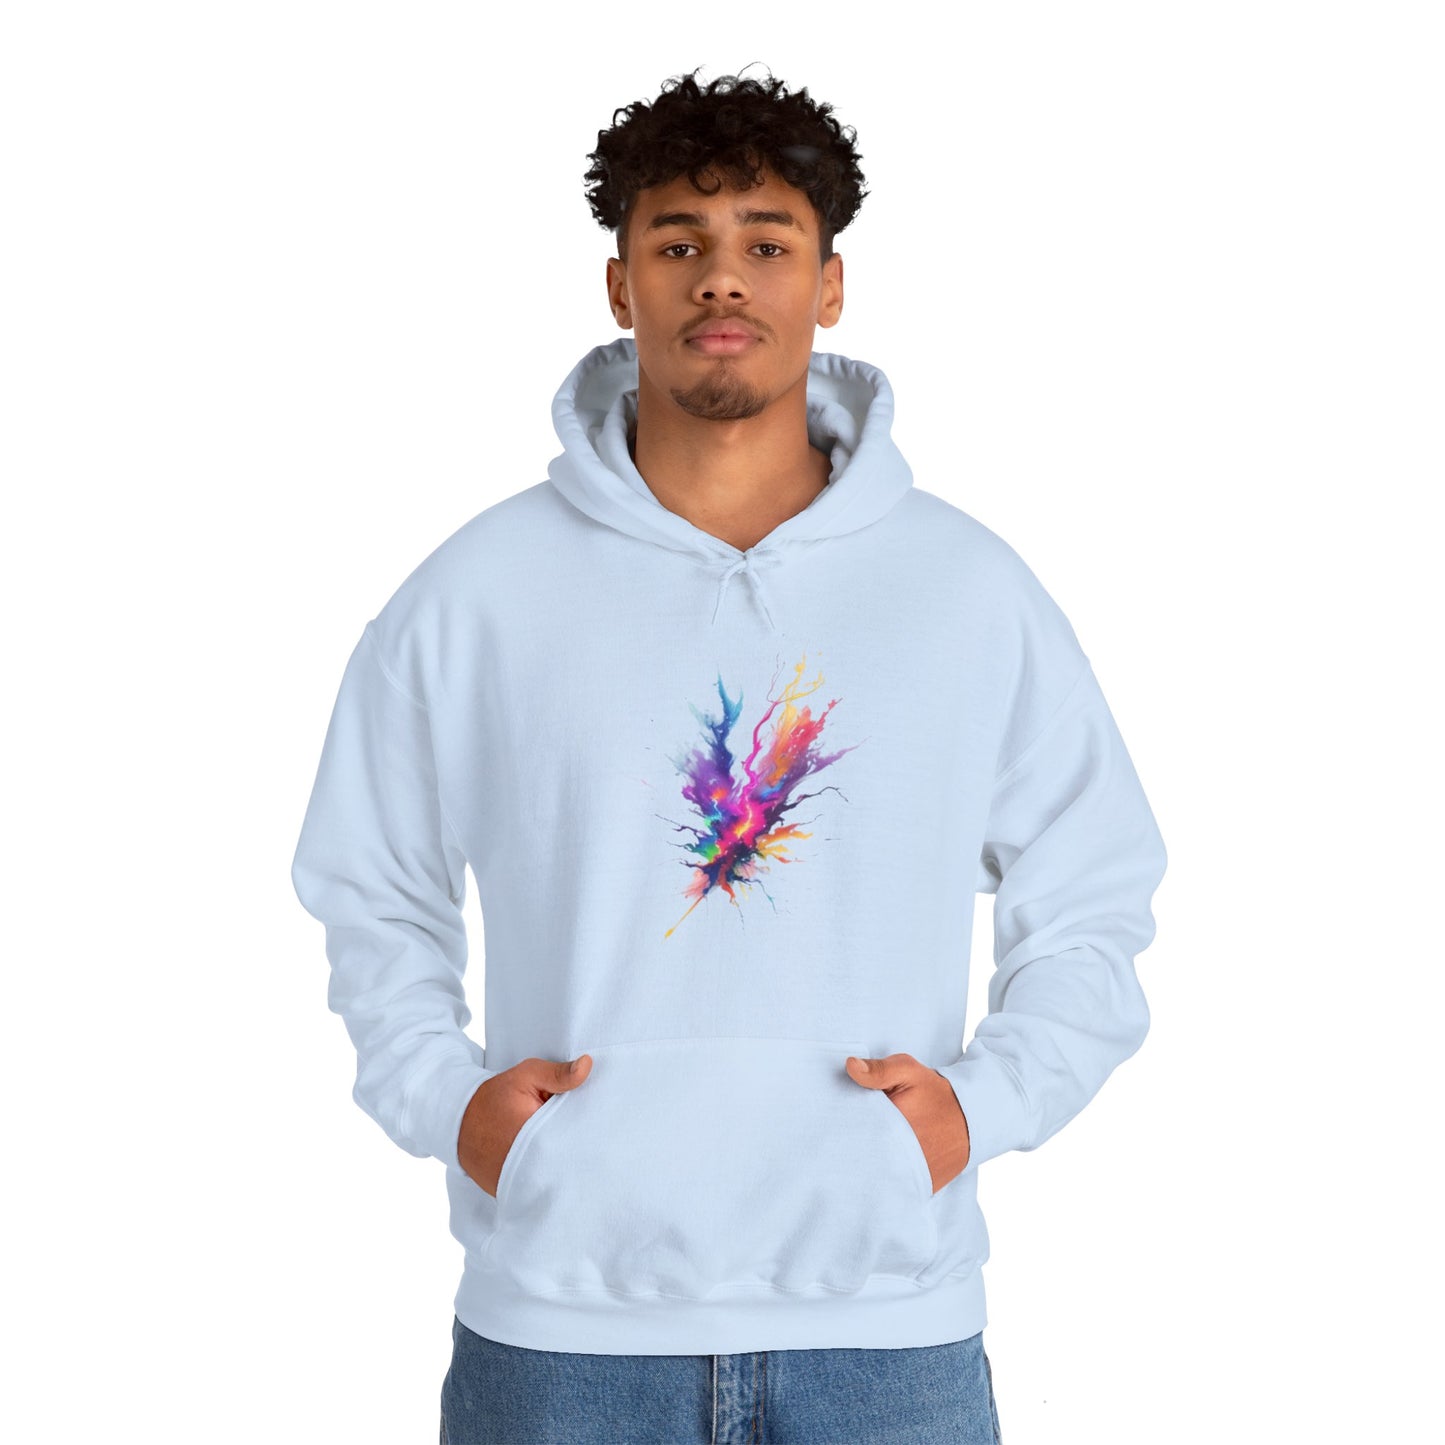 Colourful Lightning Bolt - Unisex Hooded Sweatshirt